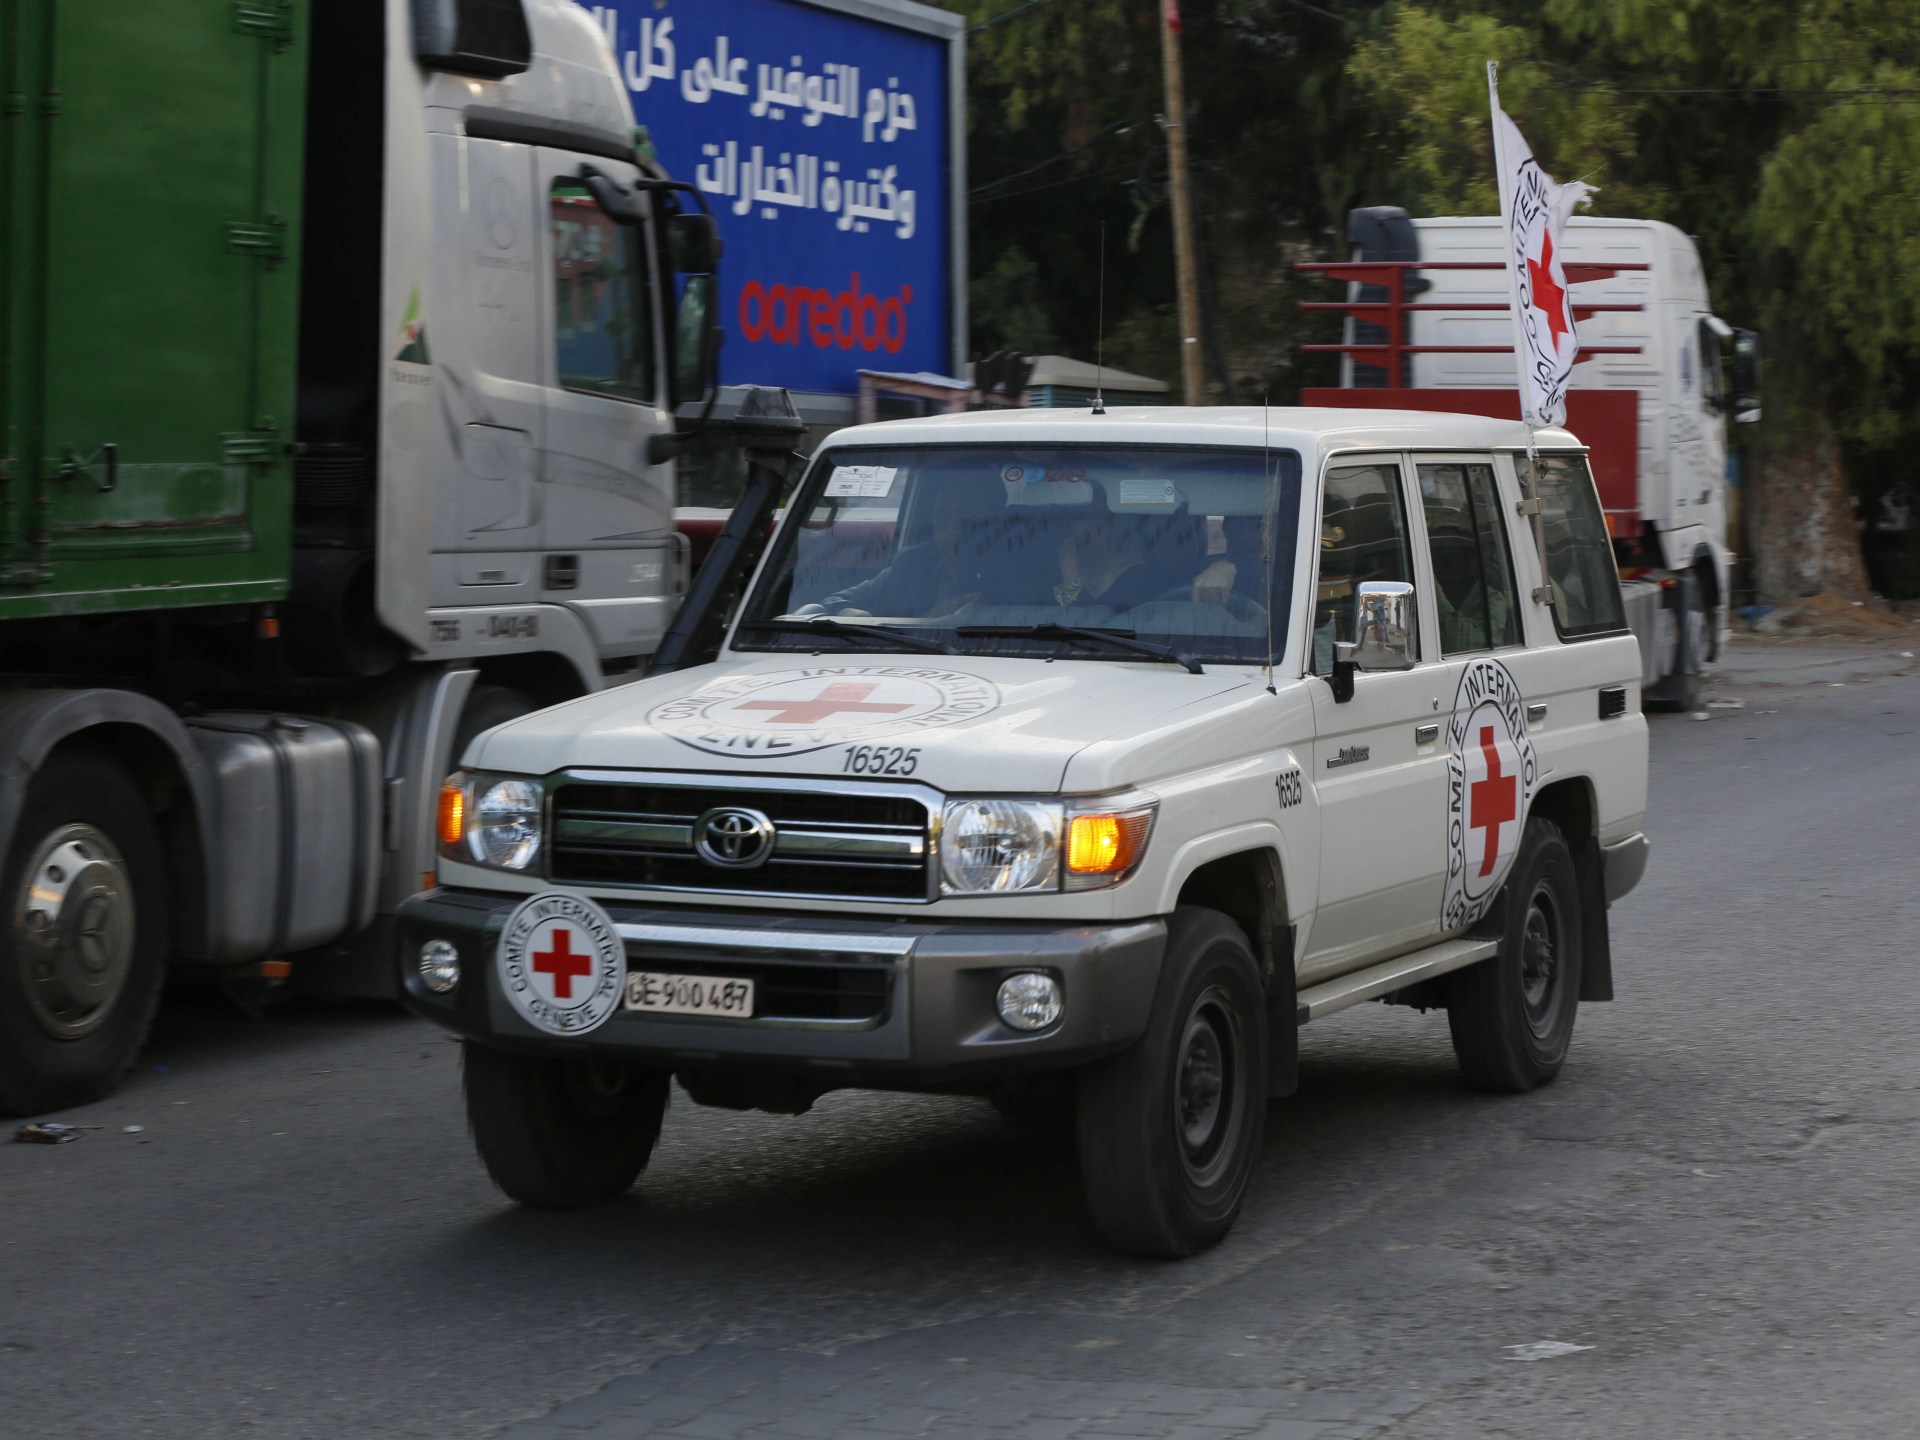 الصليب الأحمر “منزعج للغاية” بعد الهجوم على قافلة المساعدات في مدينة غزة |  أخبار الصراع الإسرائيلي الفلسطيني